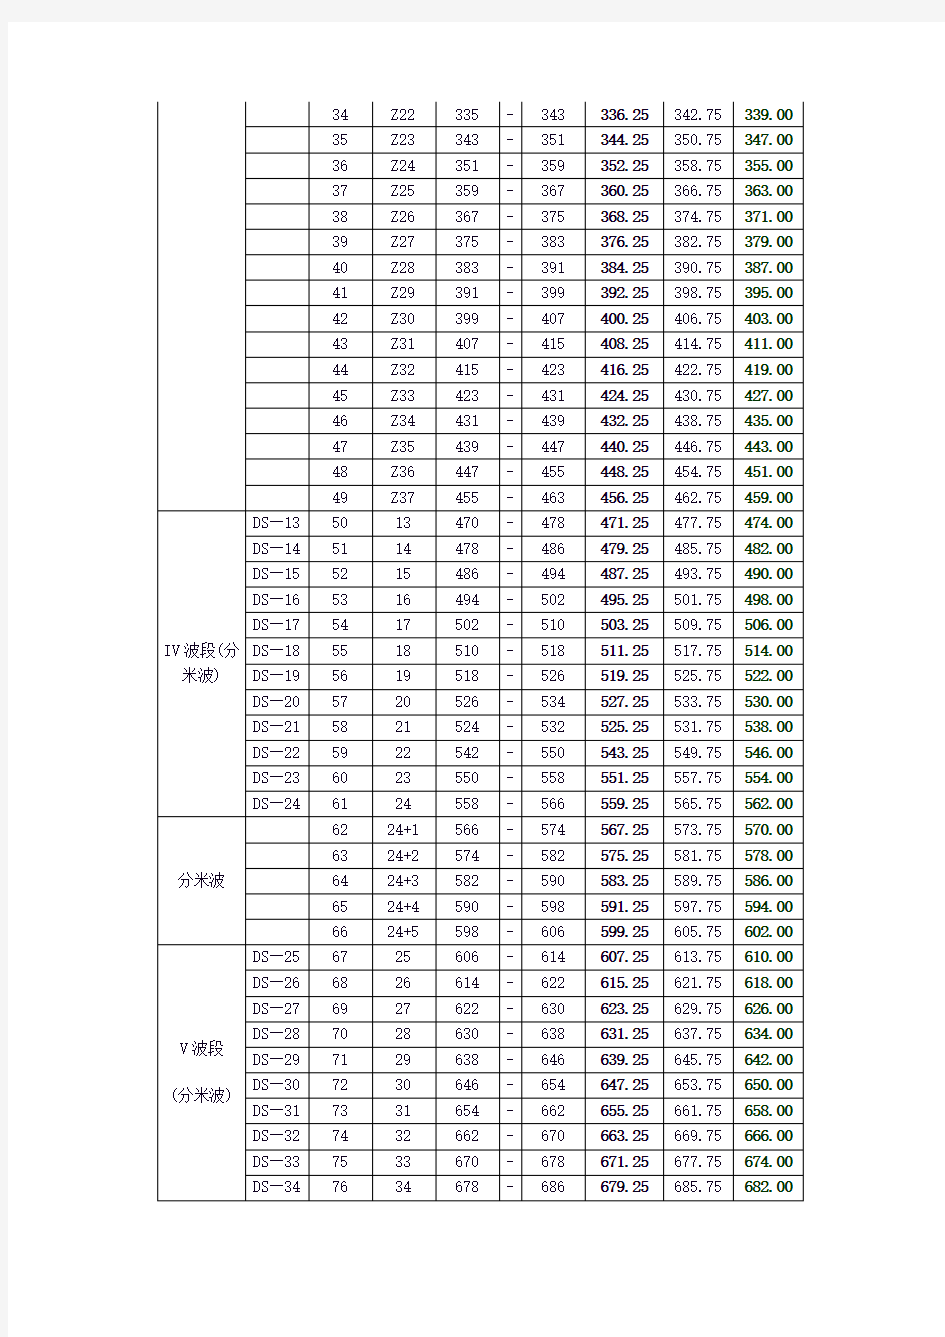 中国电视DTMB频道频率划分表